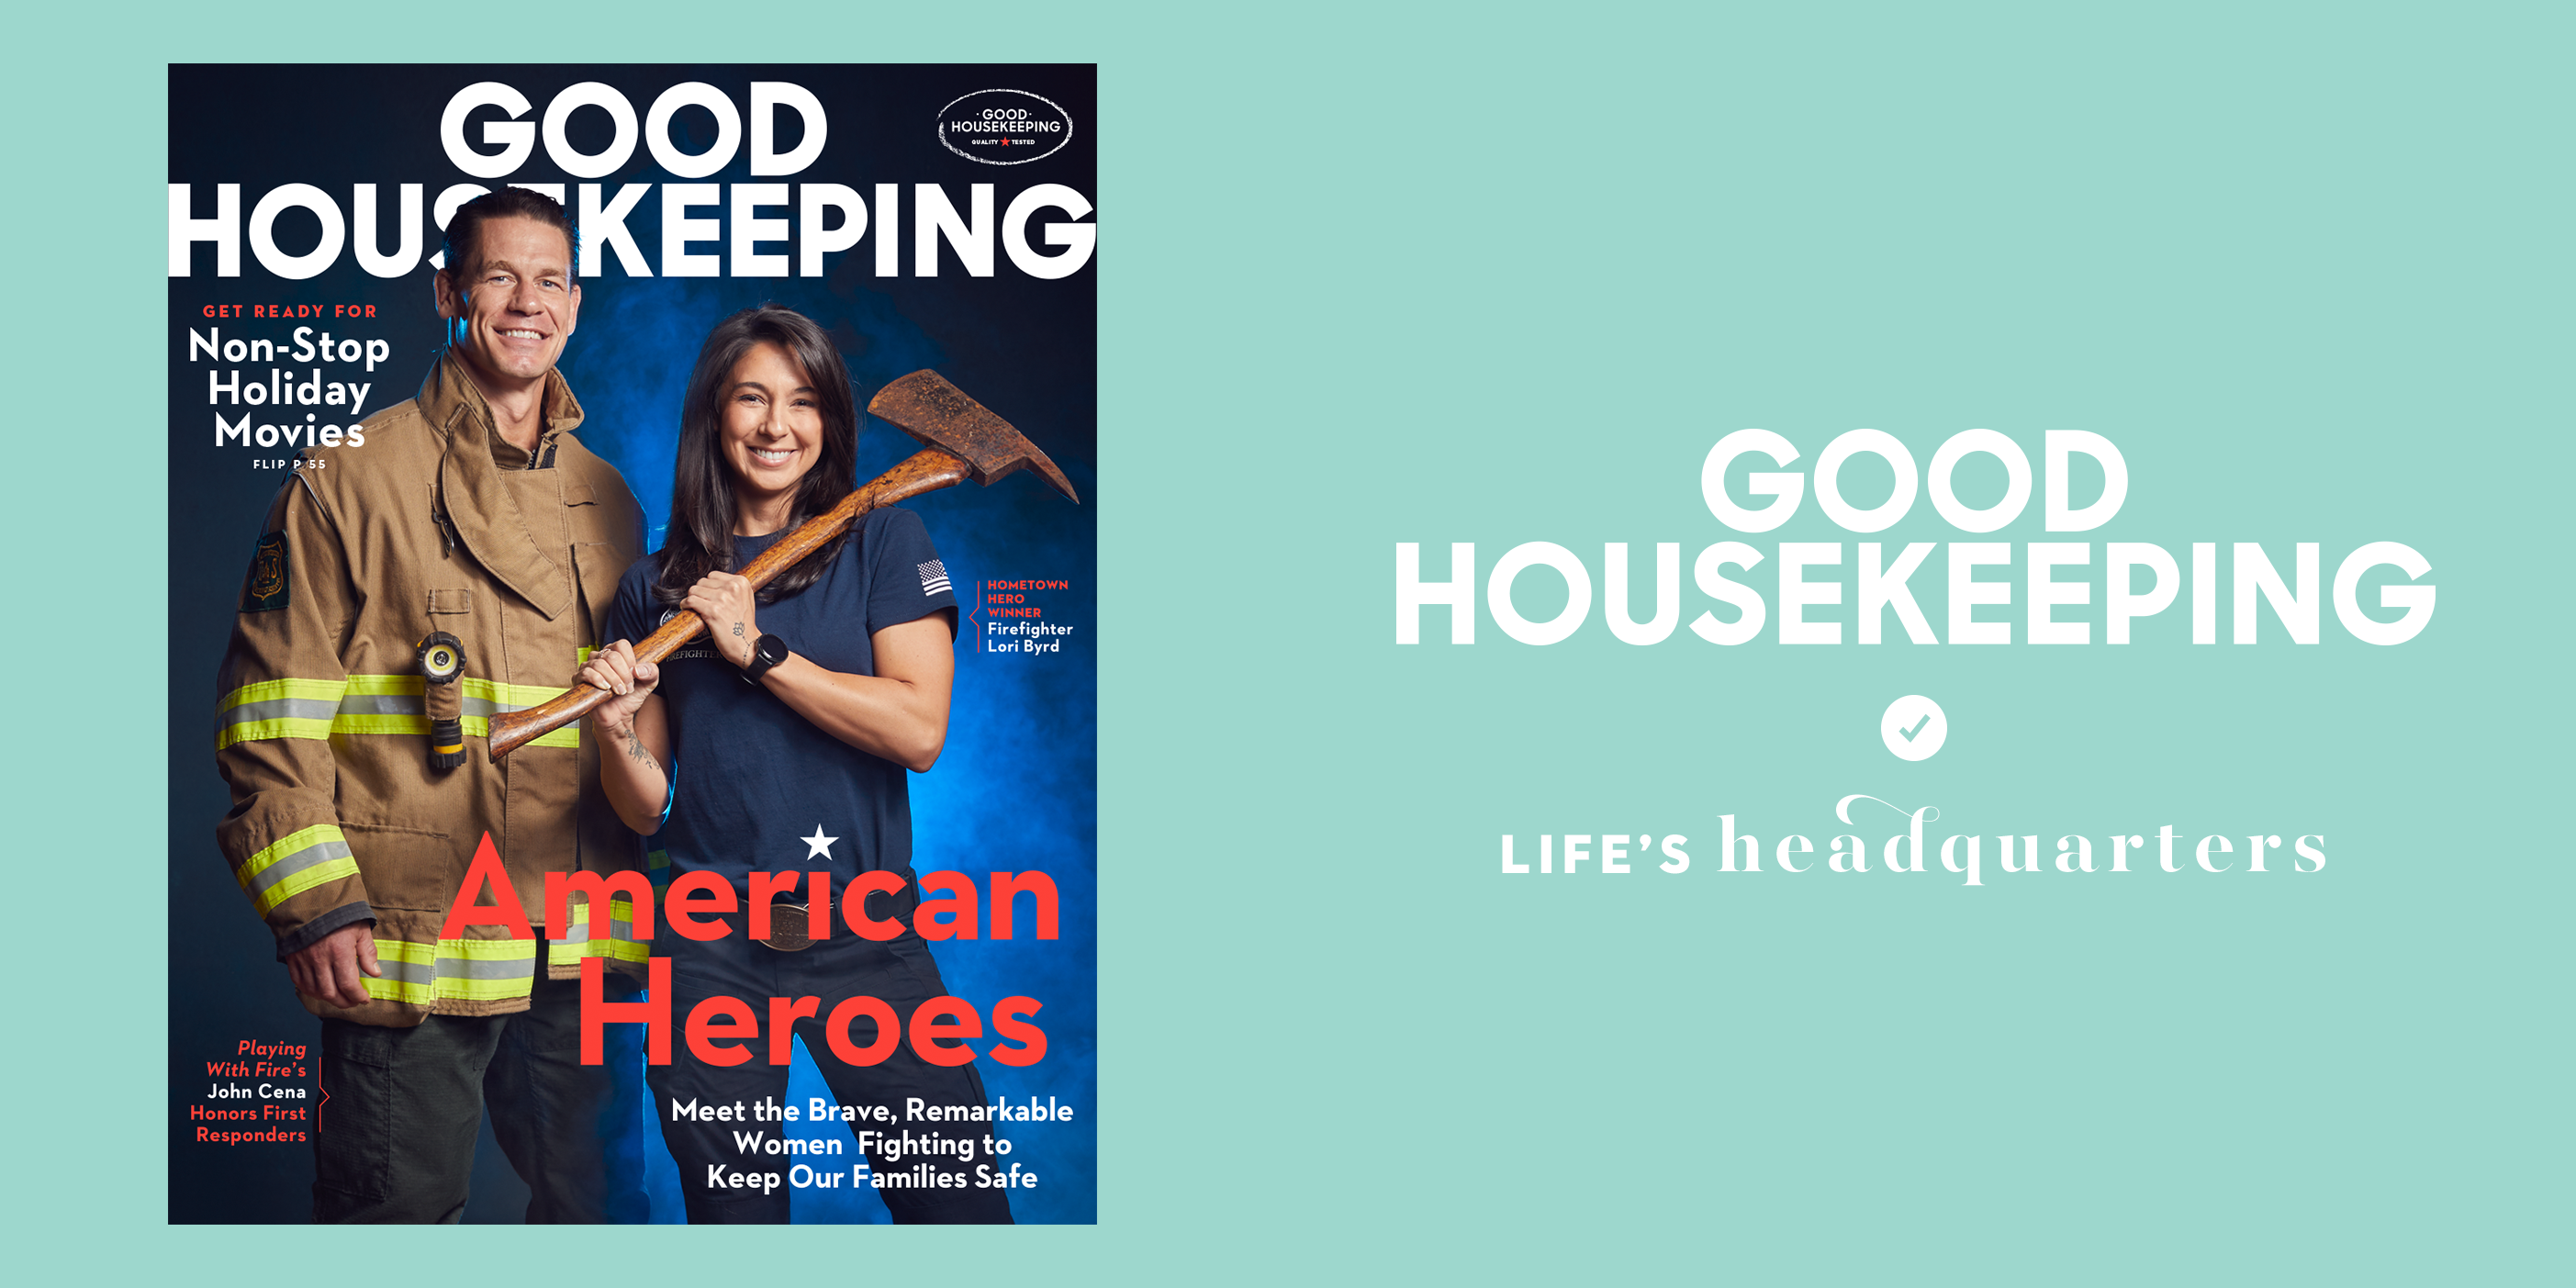 Good Housekeeping - DLT Ireland Magazine Subscription